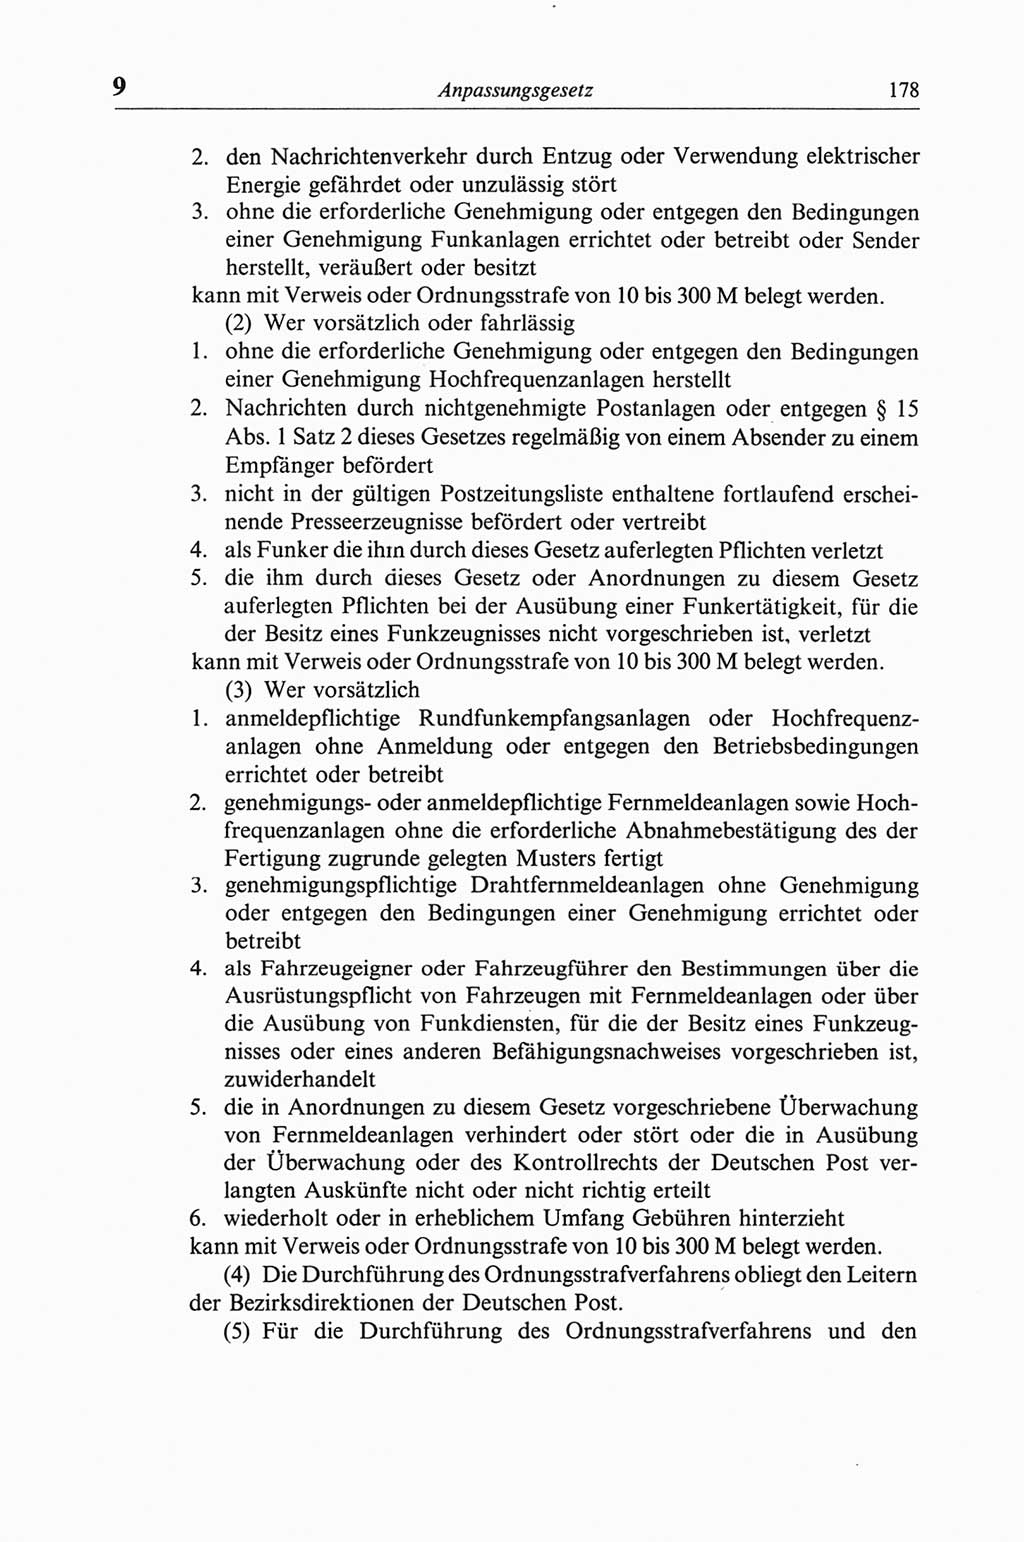 Strafgesetzbuch (StGB) der Deutschen Demokratischen Republik (DDR) und angrenzende Gesetze und Bestimmungen 1968, Seite 178 (StGB Ges. Best. DDR 1968, S. 178)